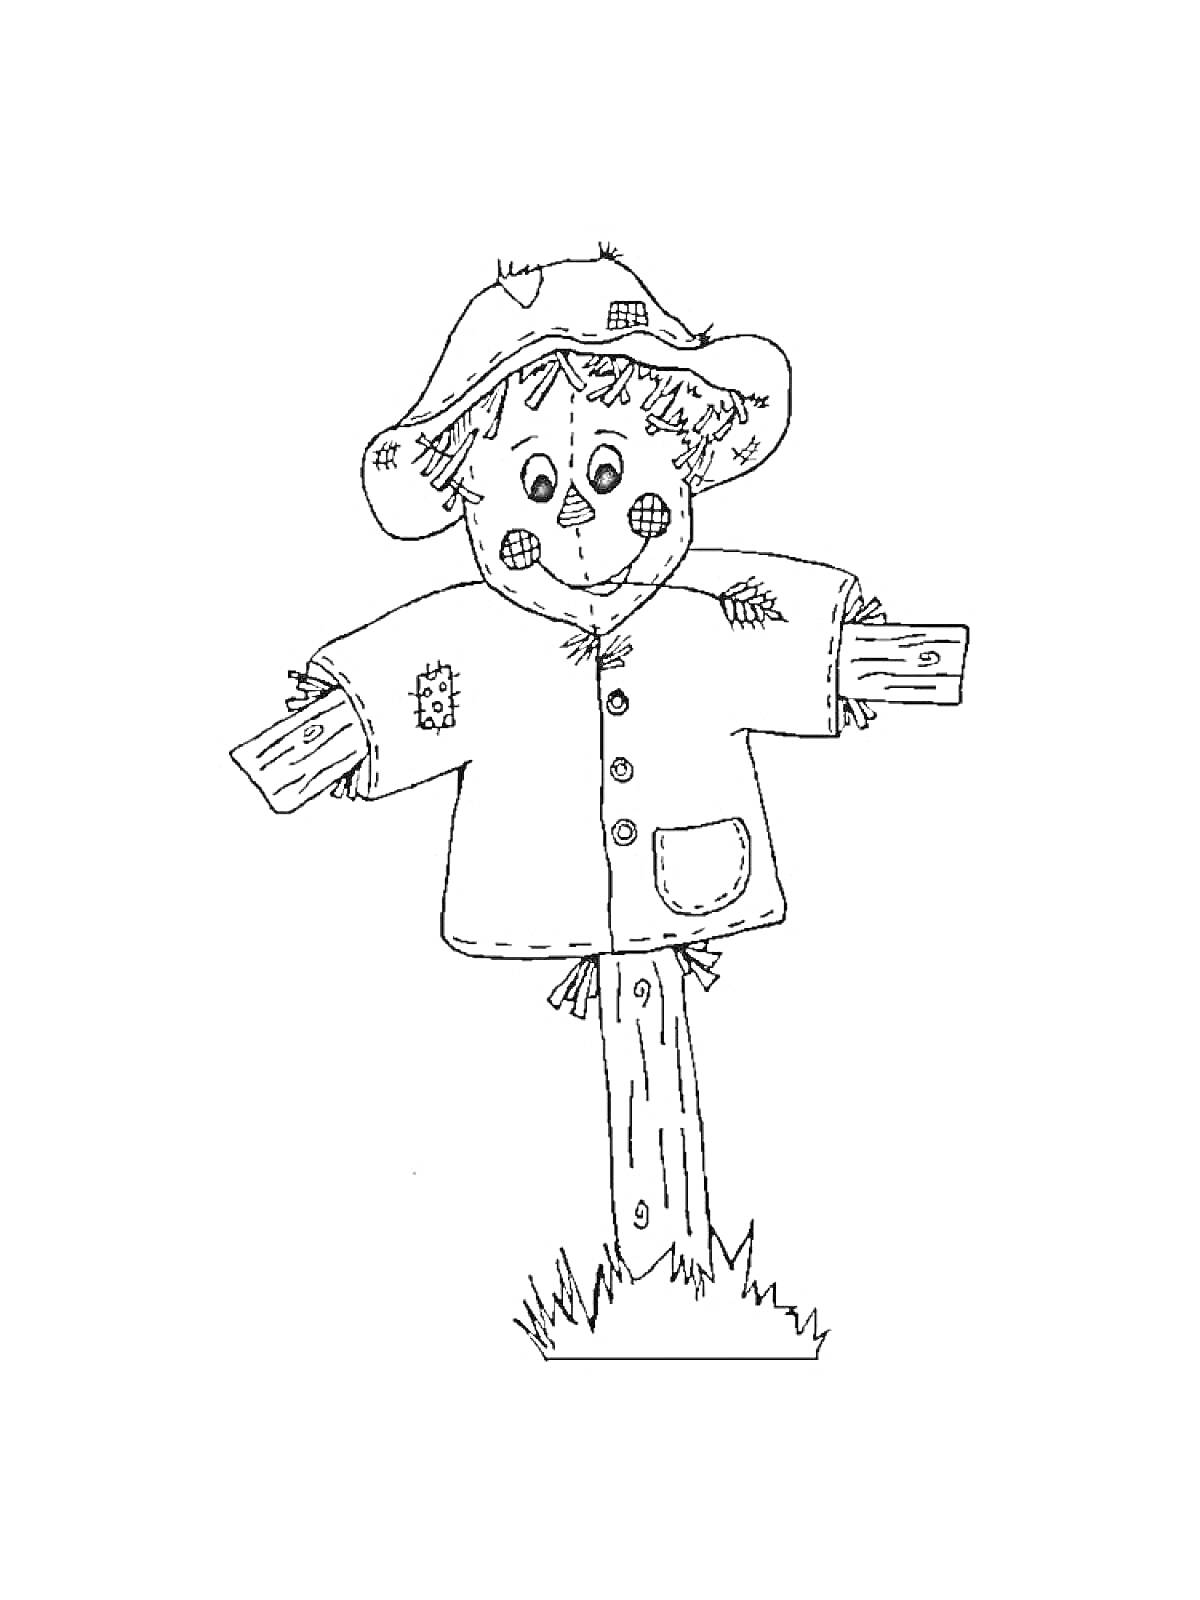 Раскраска Чучело в шляпе с заплатками, курткой на пуговицах, на деревянной стойке